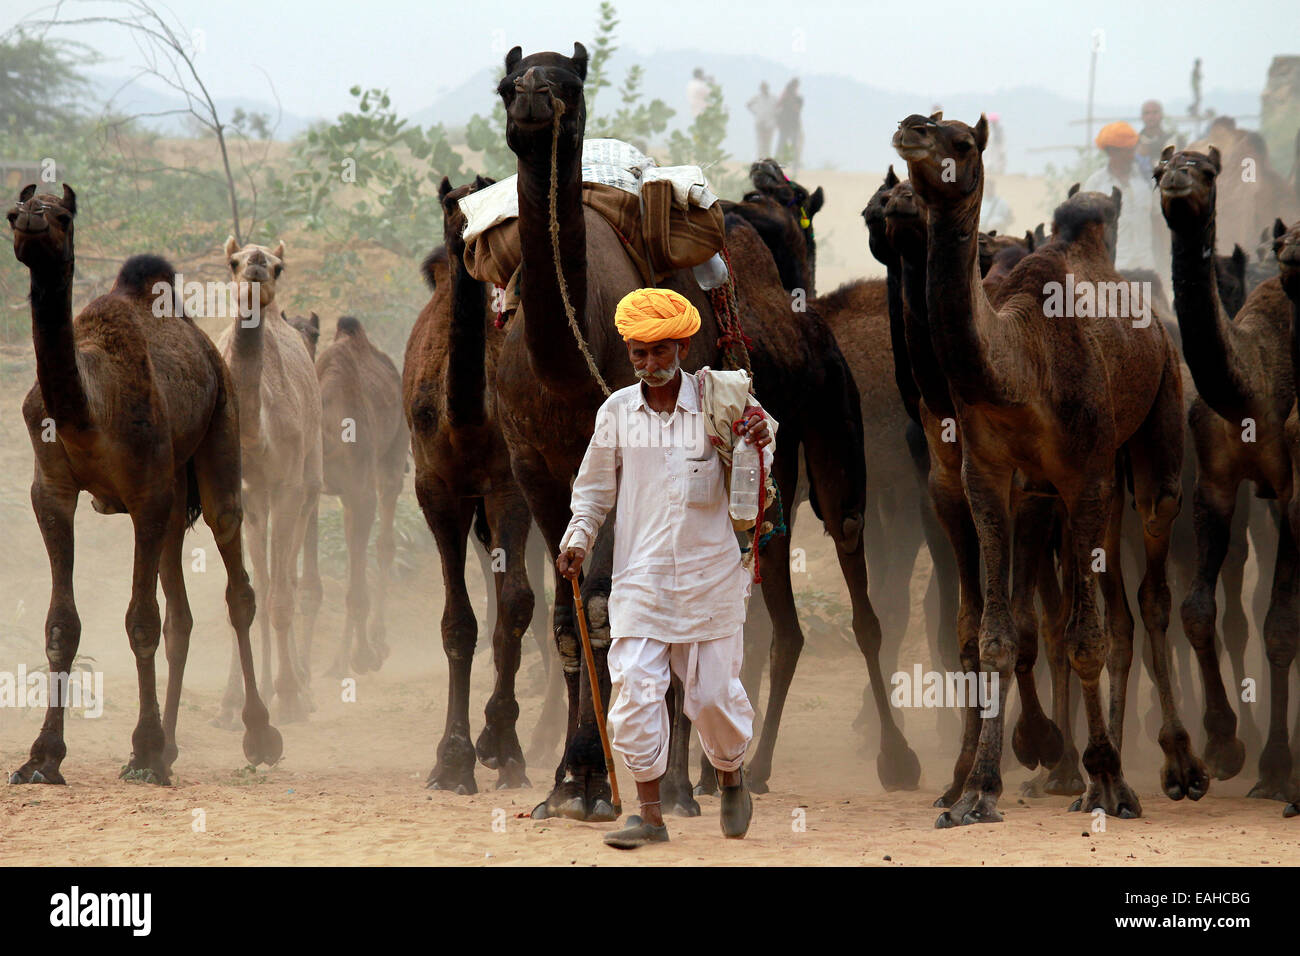 Mann, führenden, Turban, Kleidung, Kamele, Männlich, Weiblich, Sand, Pushkar, Rajasthan, Indien. Stockfoto